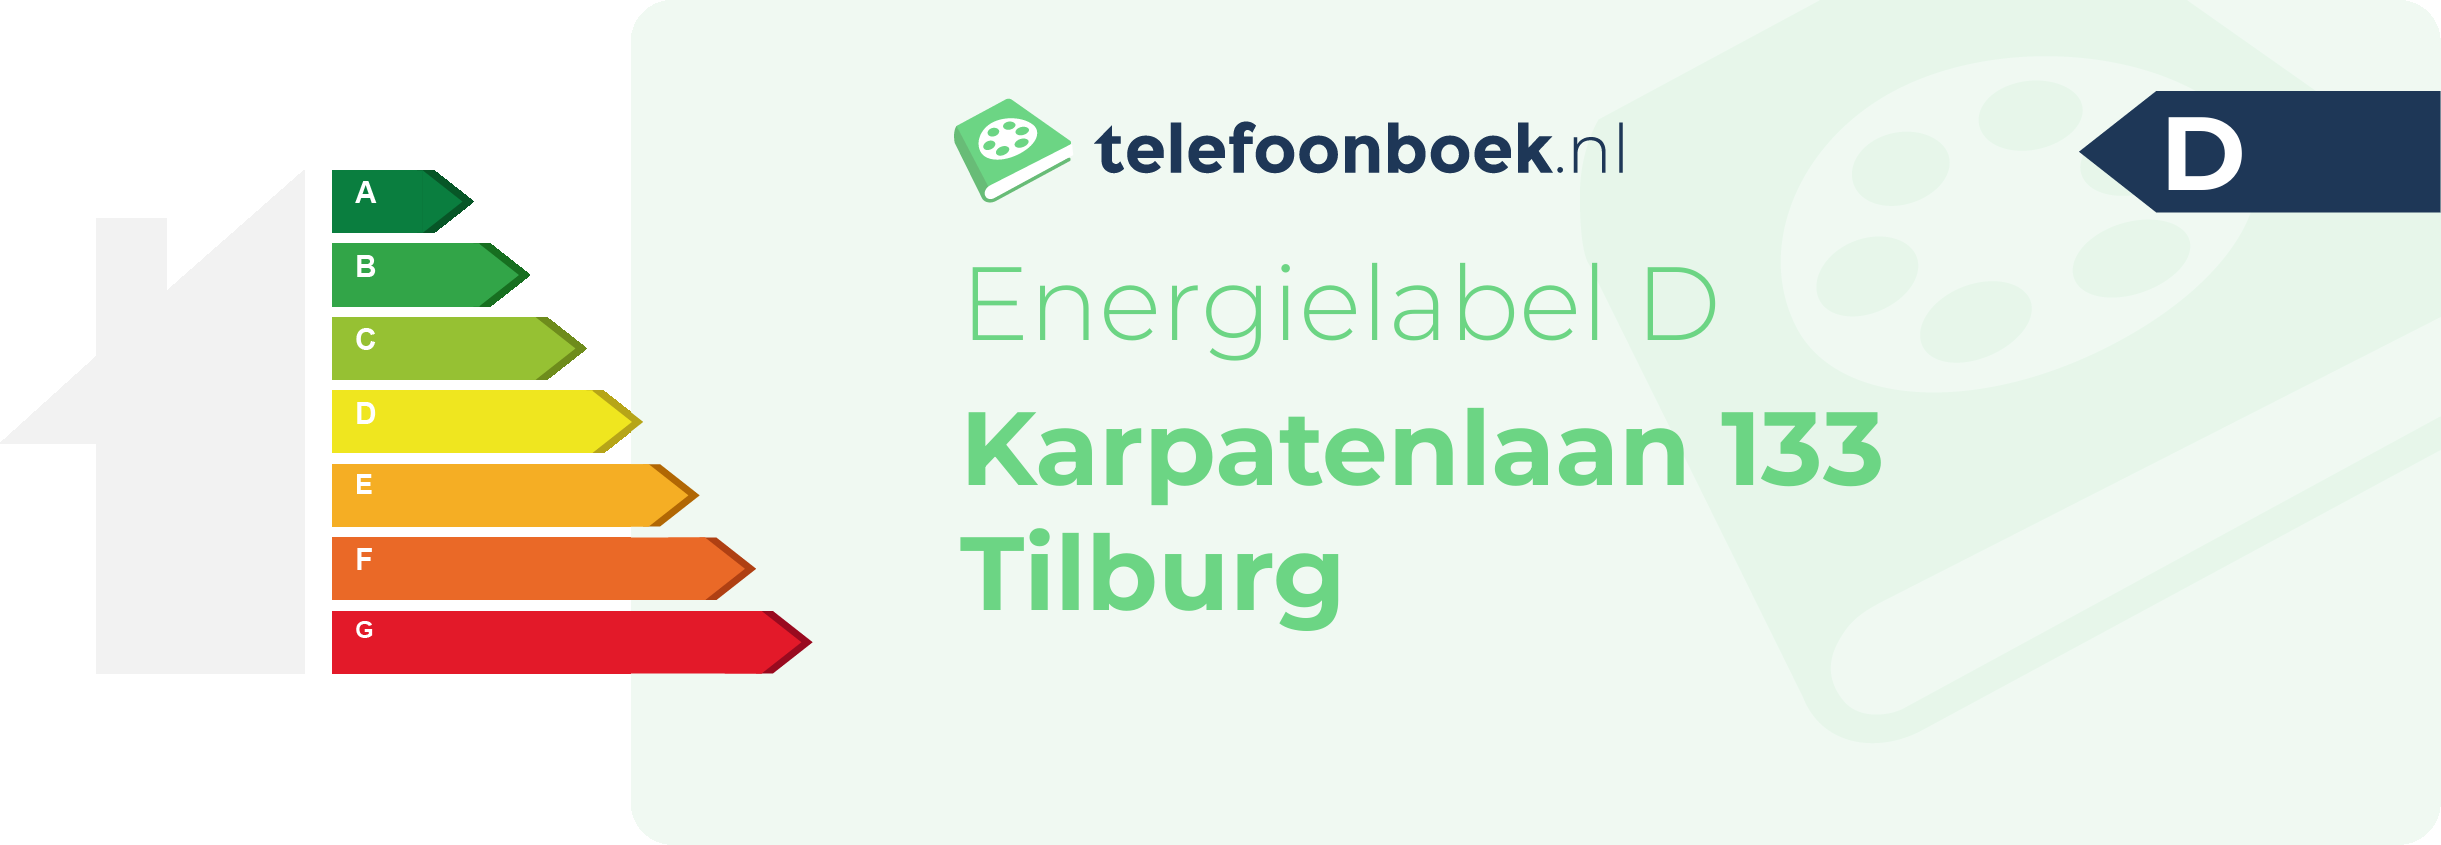 Energielabel Karpatenlaan 133 Tilburg